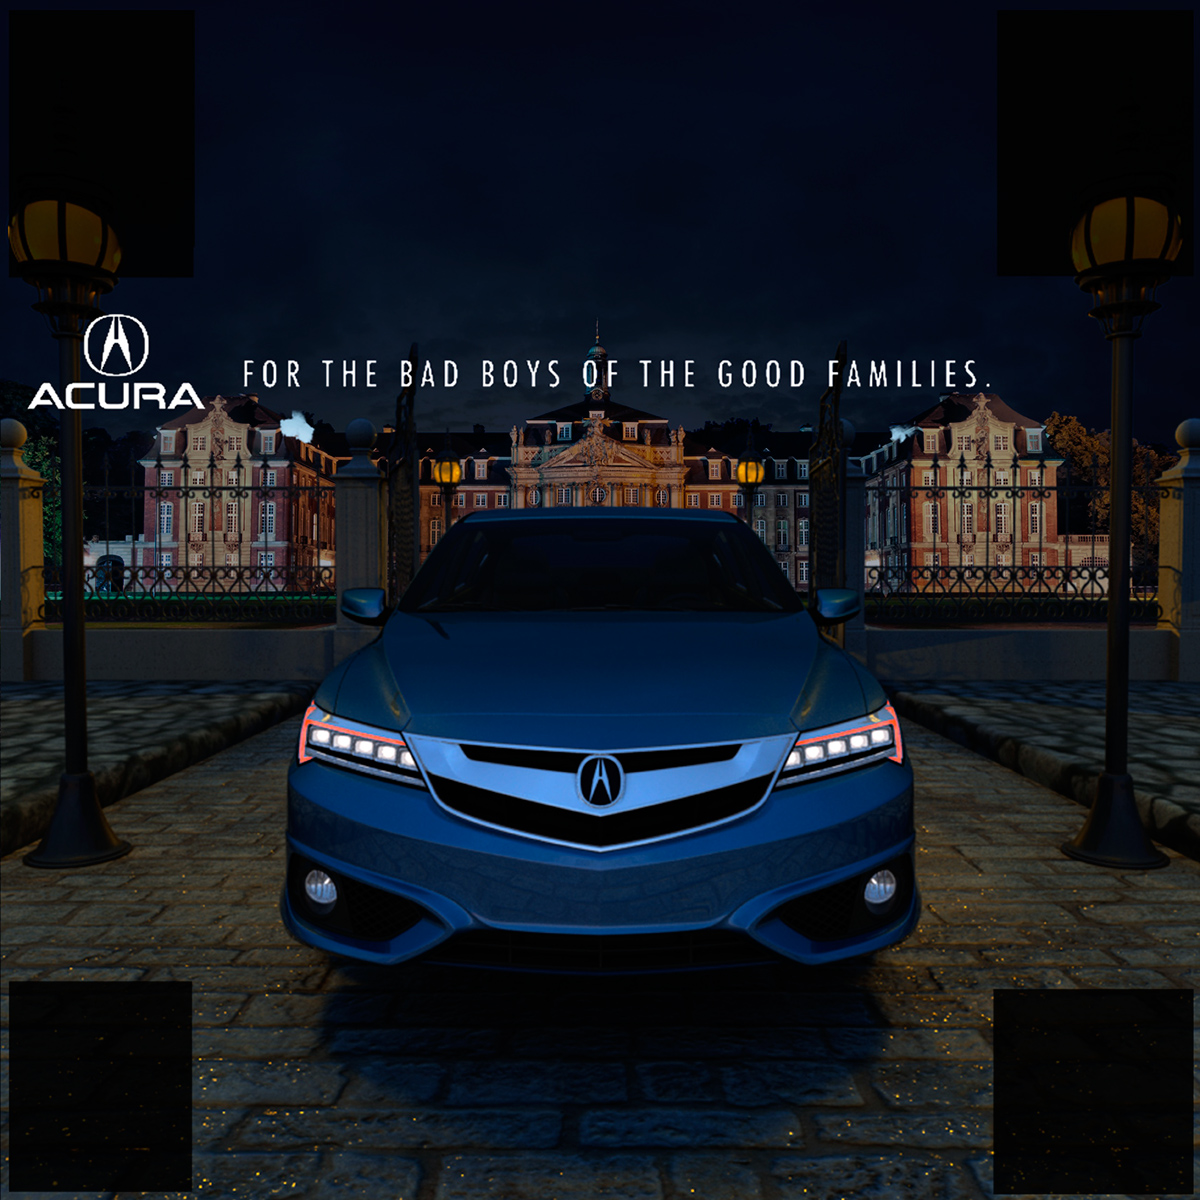 Acura luxury car ILX blue automovil premium